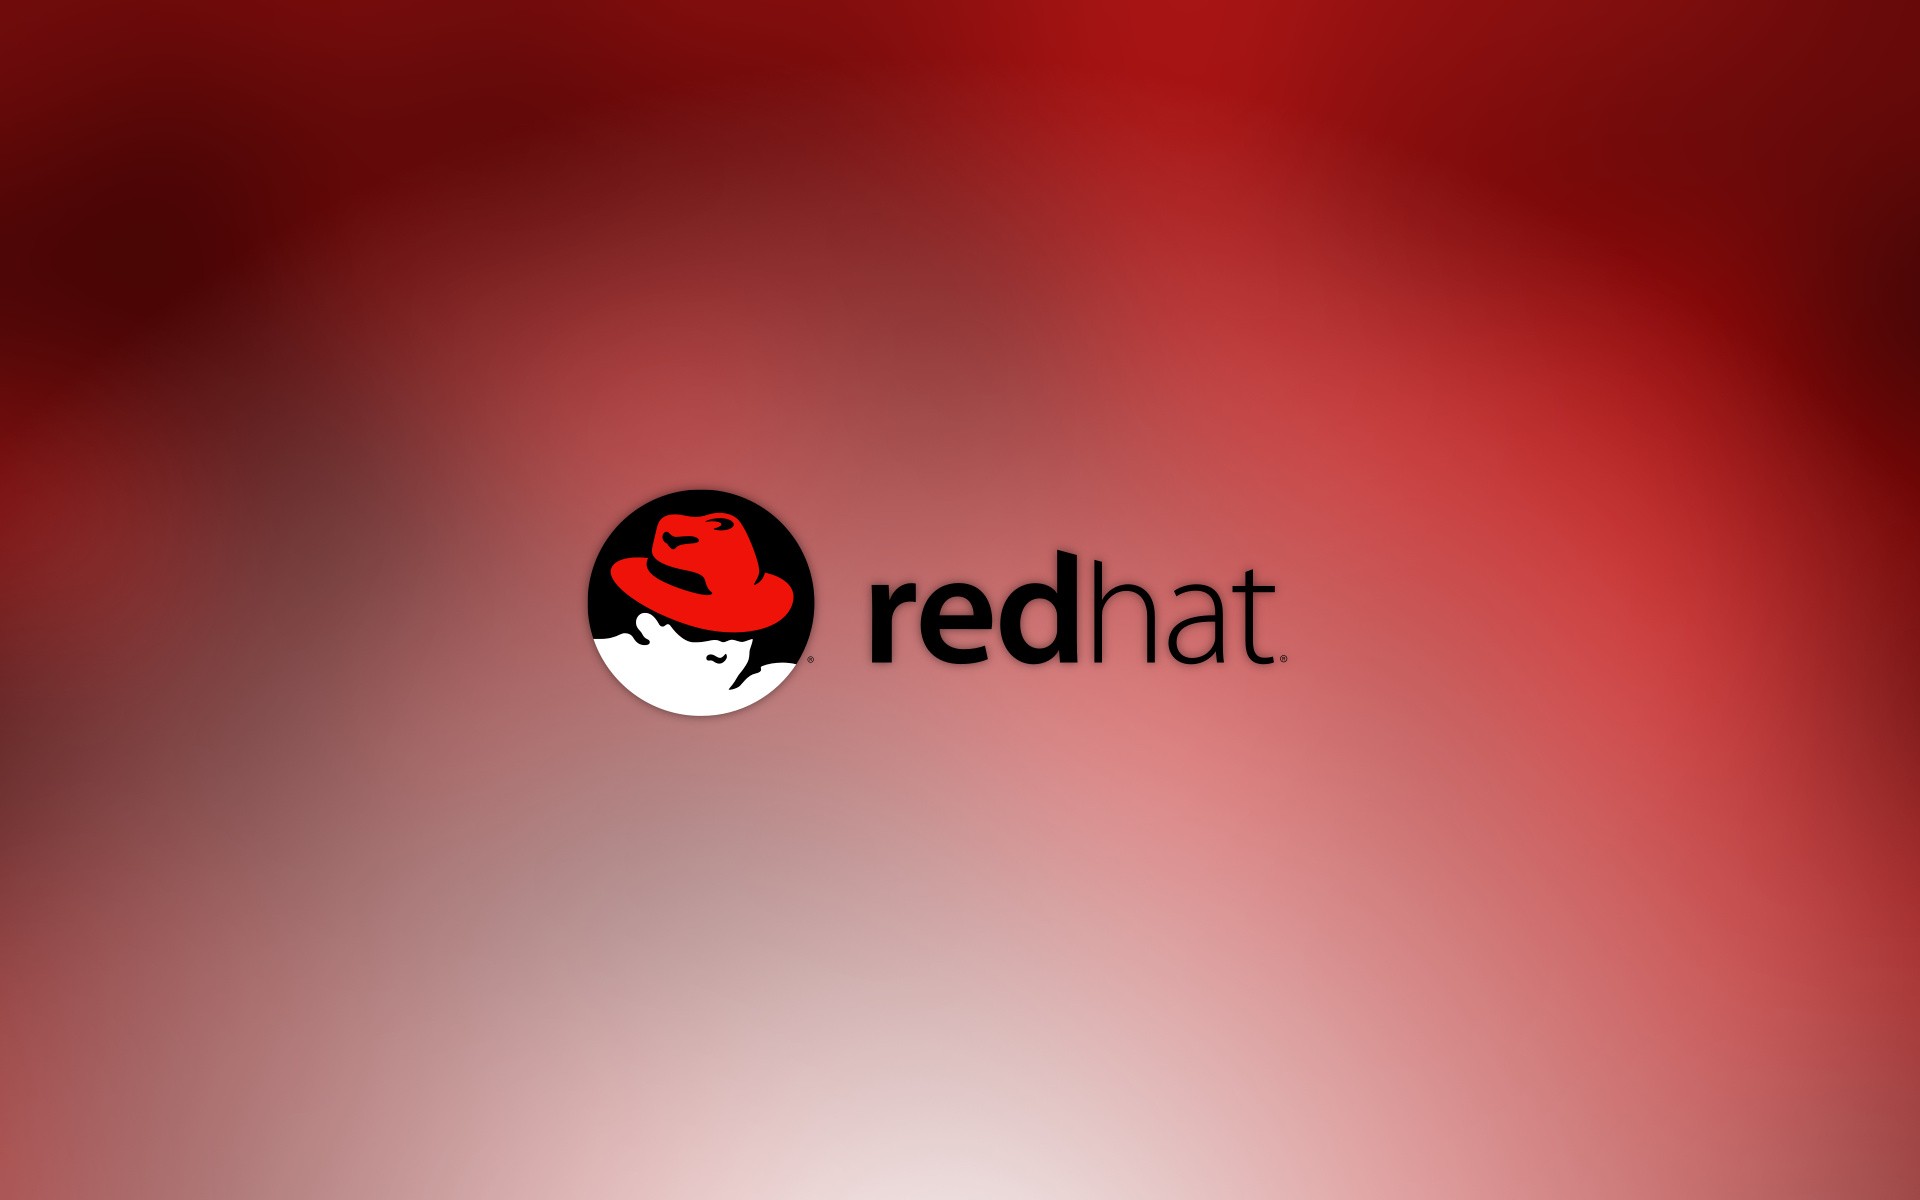 红帽6Linux操作系统收到重要内核安全更新红帽6Linux操作系统收到重要内核安全更新